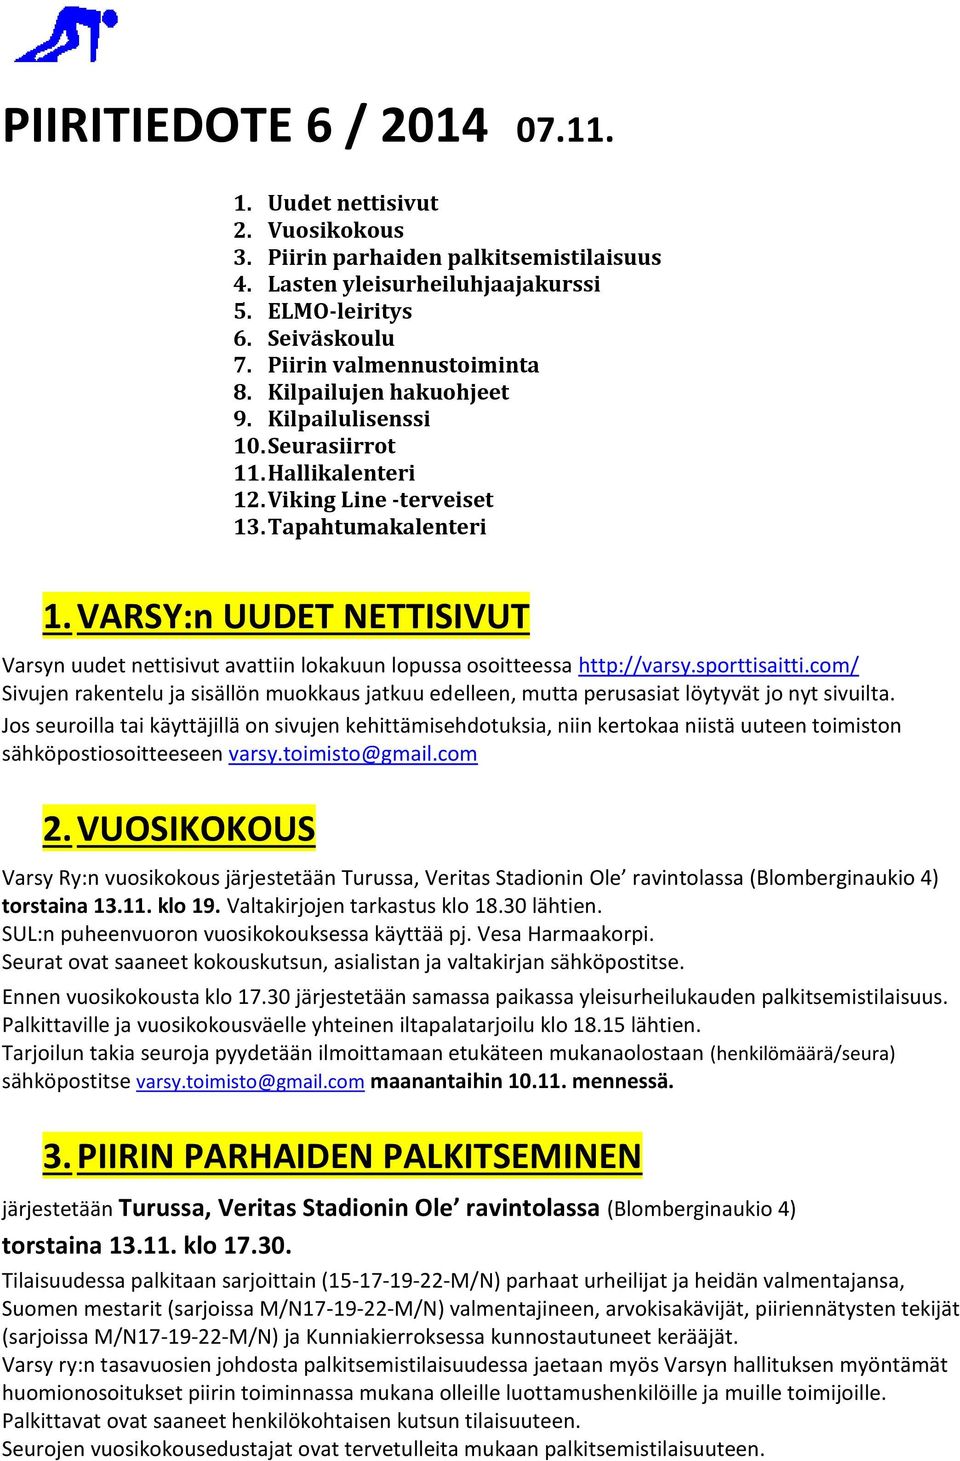 VARSY:n UUDET NETTISIVUT Varsyn uudet nettisivut avattiin lokakuun lopussa osoitteessa http://varsy.sporttisaitti.